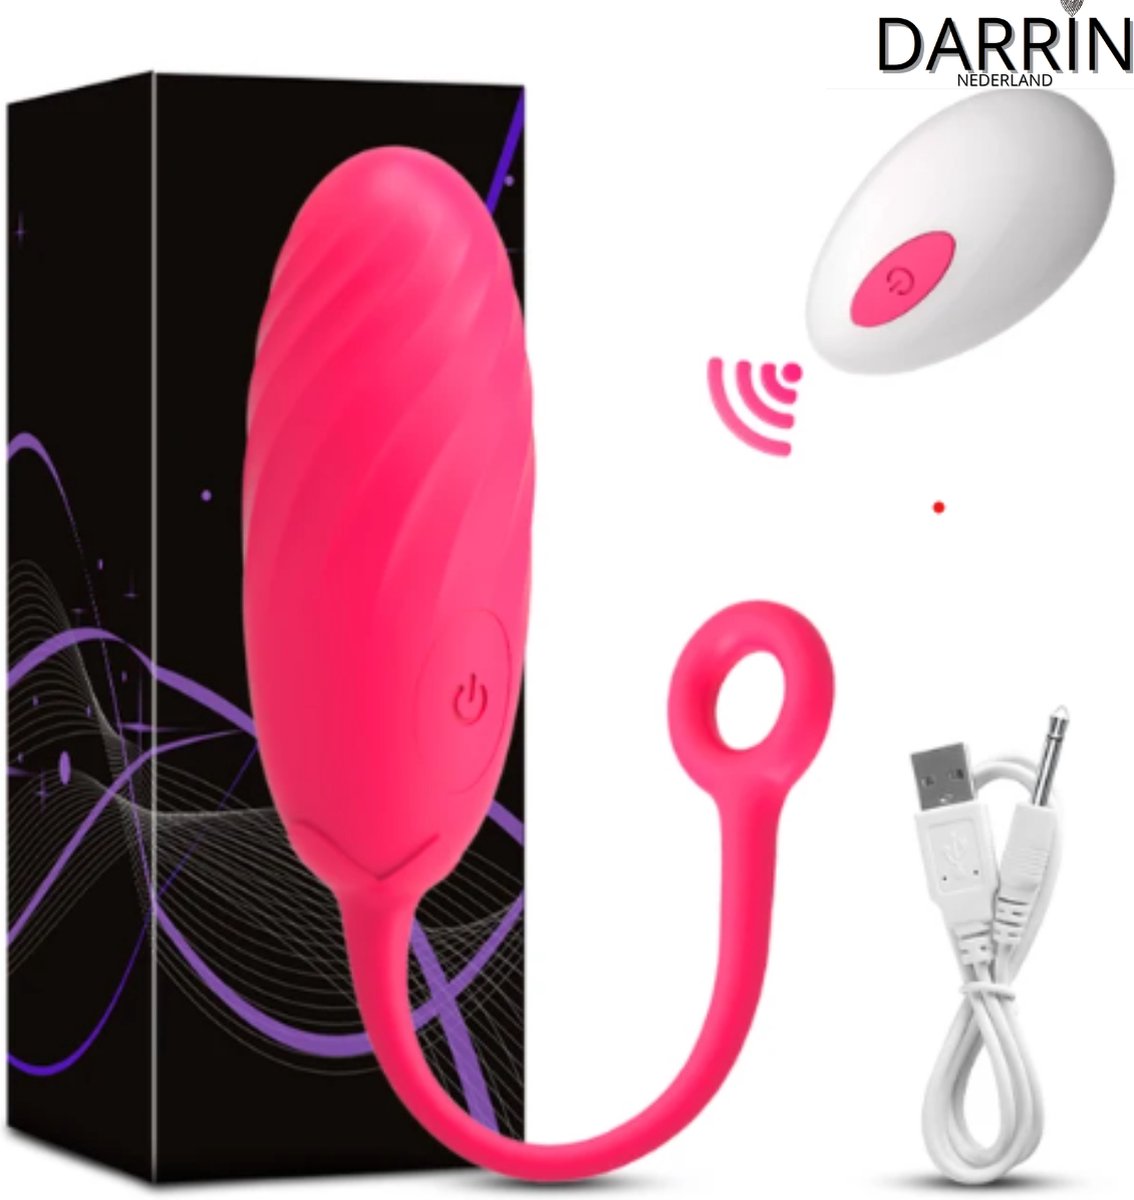 Draagbare Mini Vibrator Ei voor Vrouwen (Roze)- Clitorale Stimulatie - 10 Levels - G-spot - Vibrator voor Vrouwen - Seksspeeltje voor Koppels - Draadloze Afstandsbediening - Volwassen Seksspeeltje en Stimulator - Vibrerende Ei